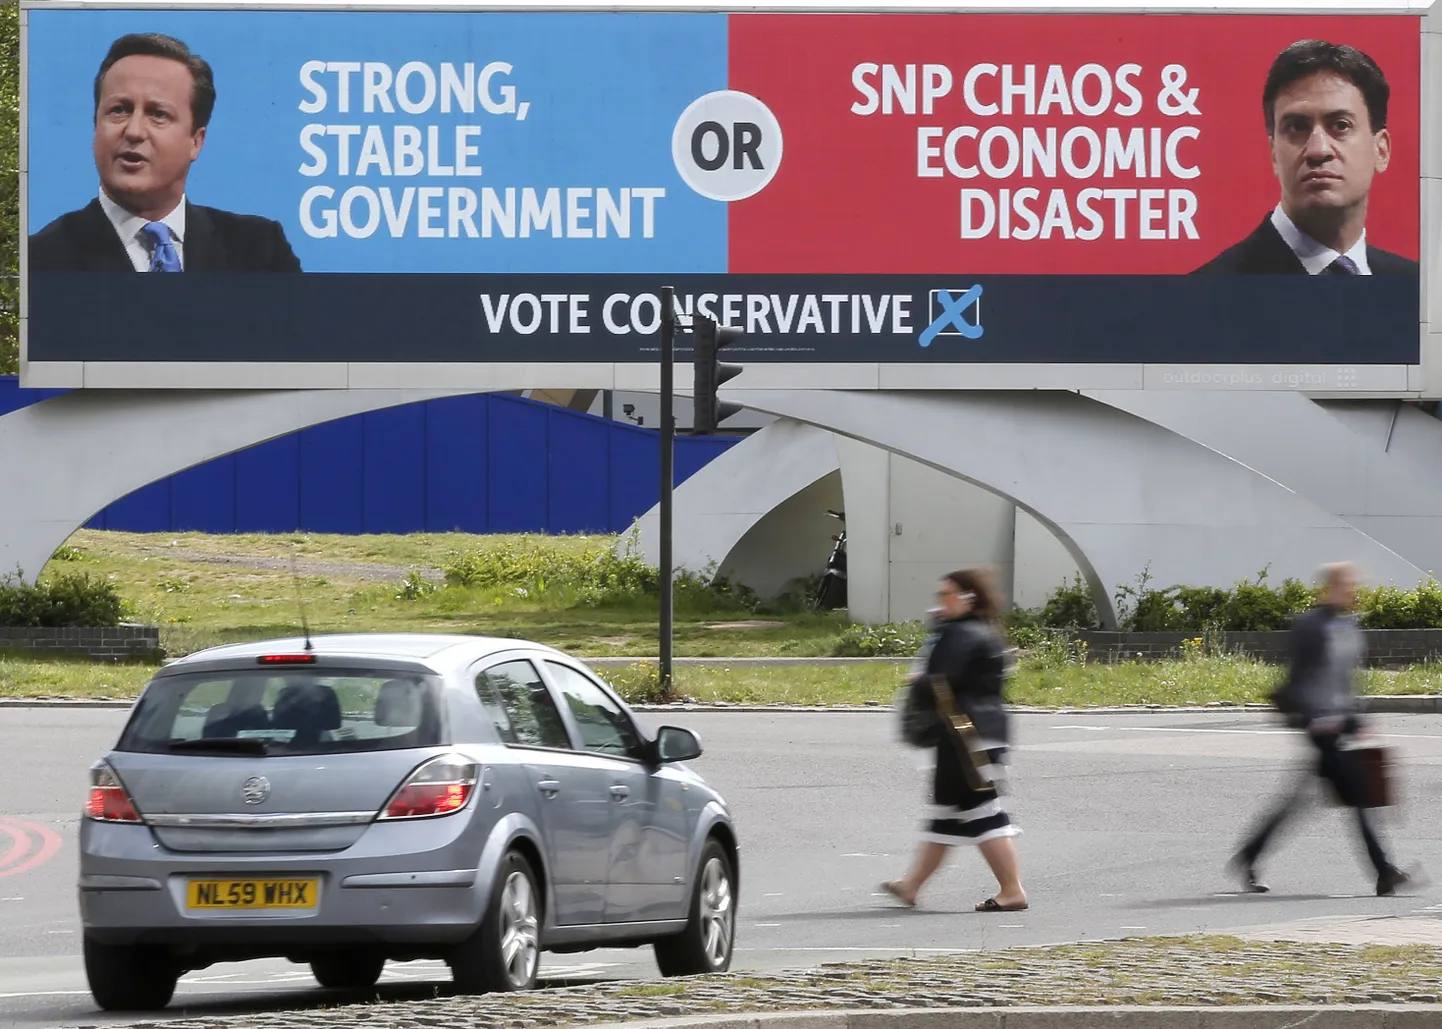 Praegust peaministrit konservatiivide liidrit David Cameroni ja leiboristide juhti Ed Milibandi kõrvutav plakat, mis kinnitab, et leiboriste valides valid kaose.